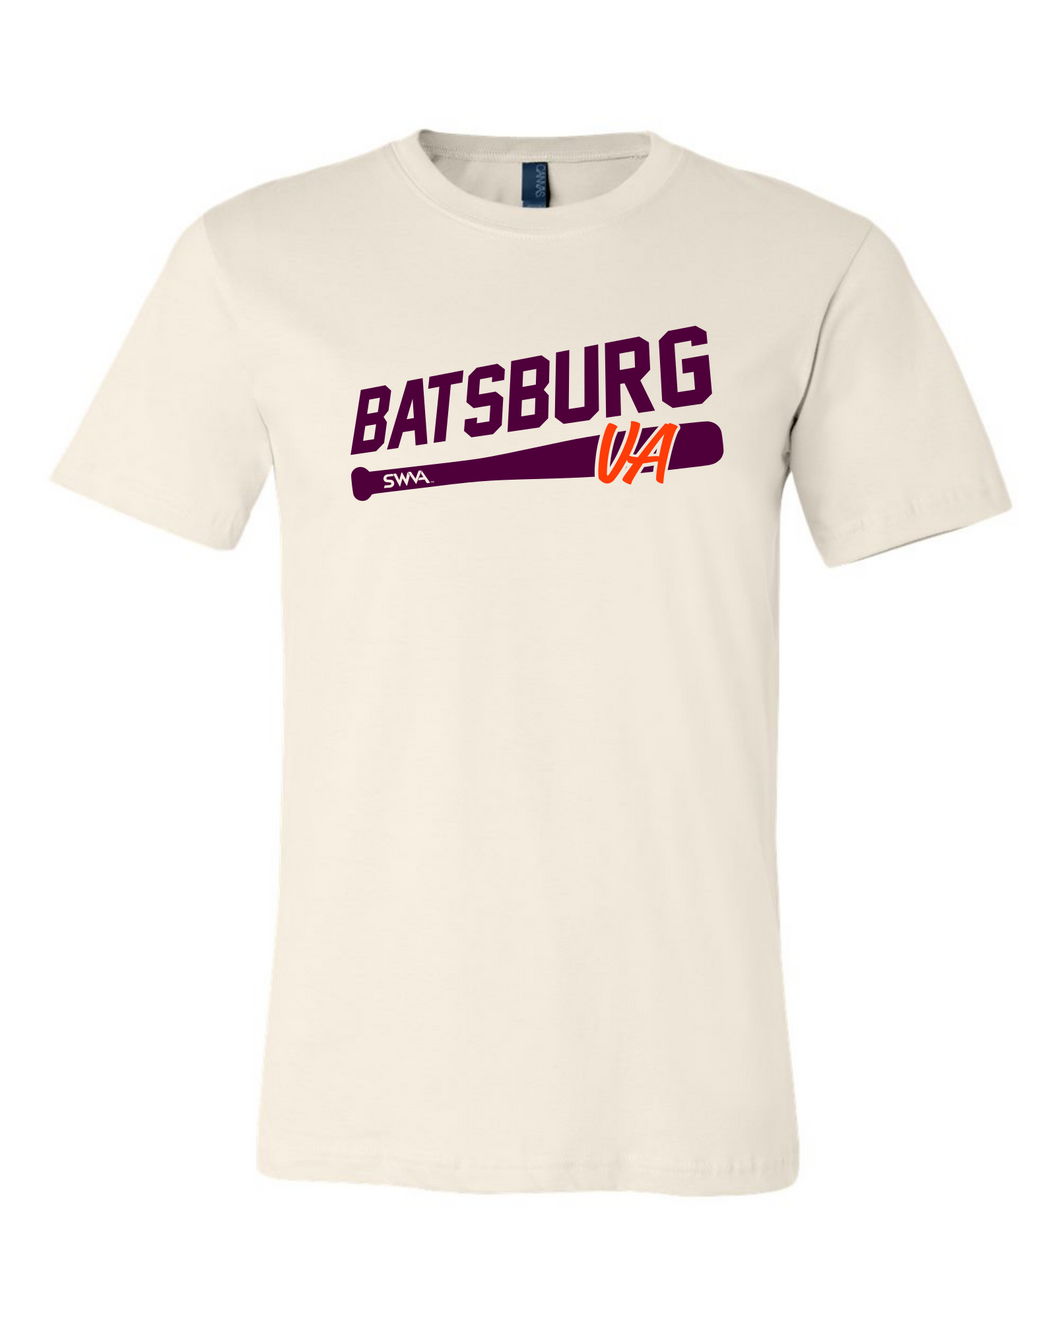 Batsburg, Virginia T-Shirt